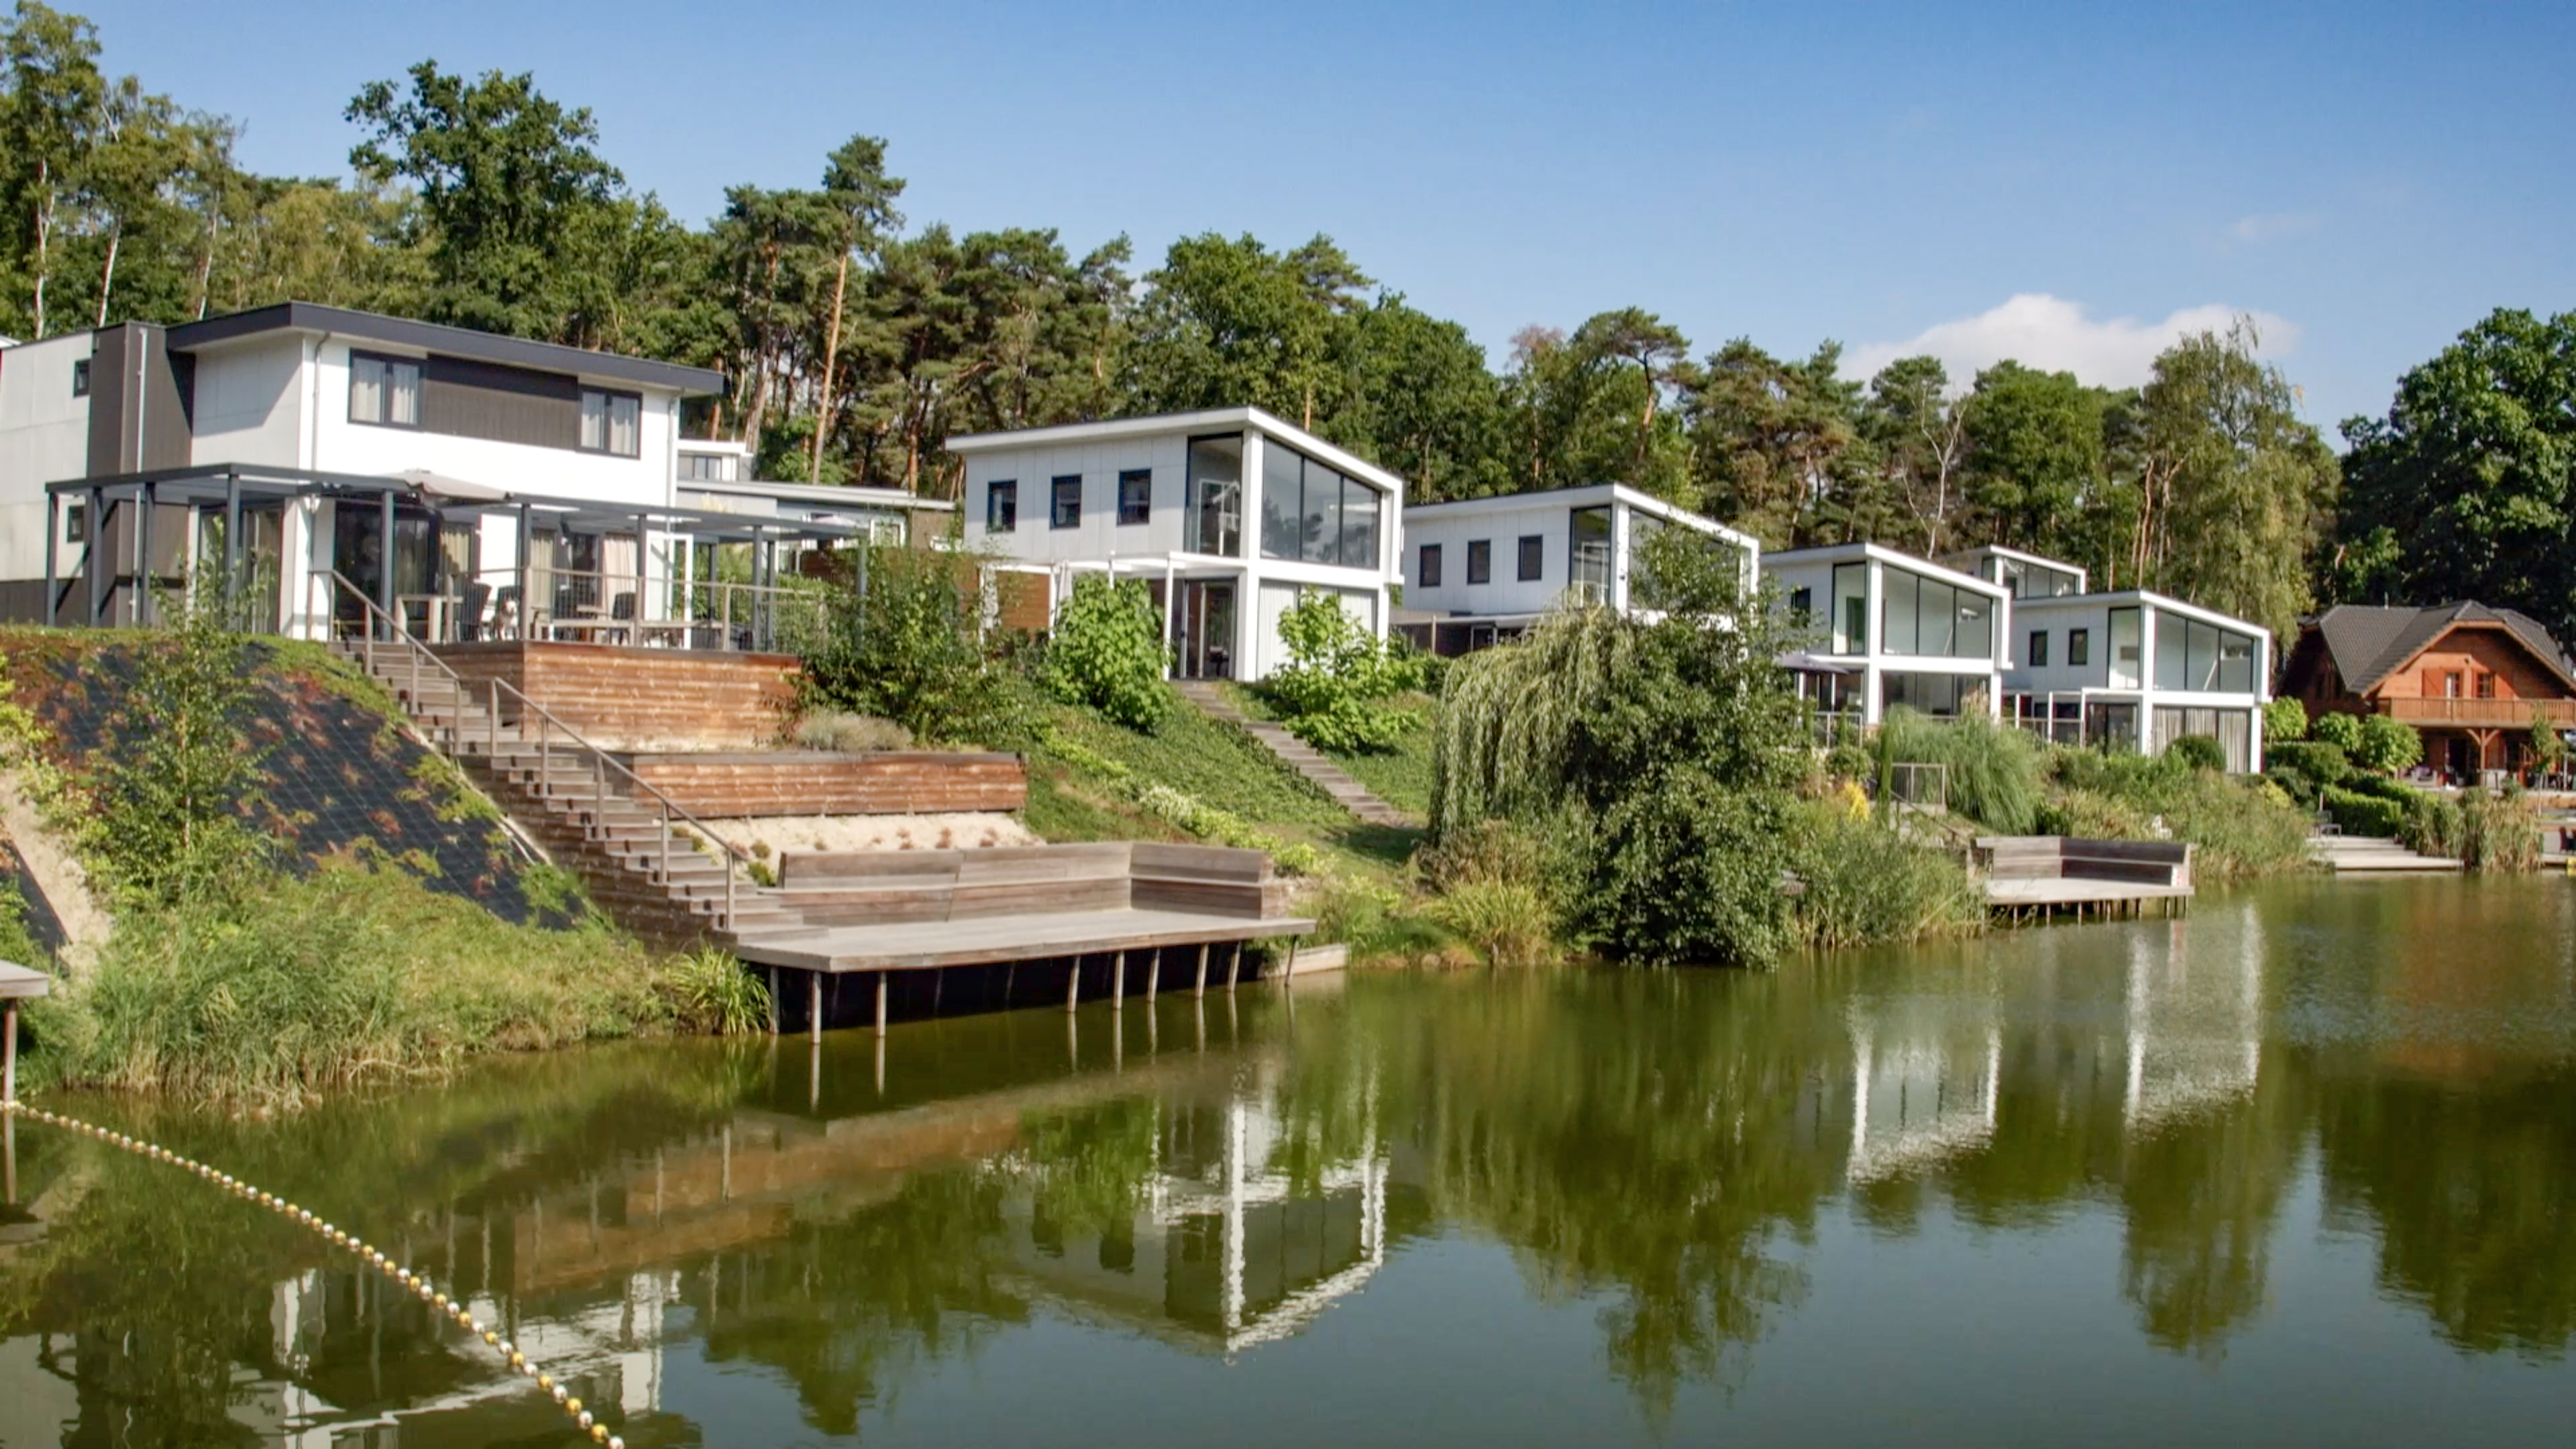 Aanbieding vakantiehuisje Zuid Limburg 🏕️ EuroParcs Resort Brunssummerheide